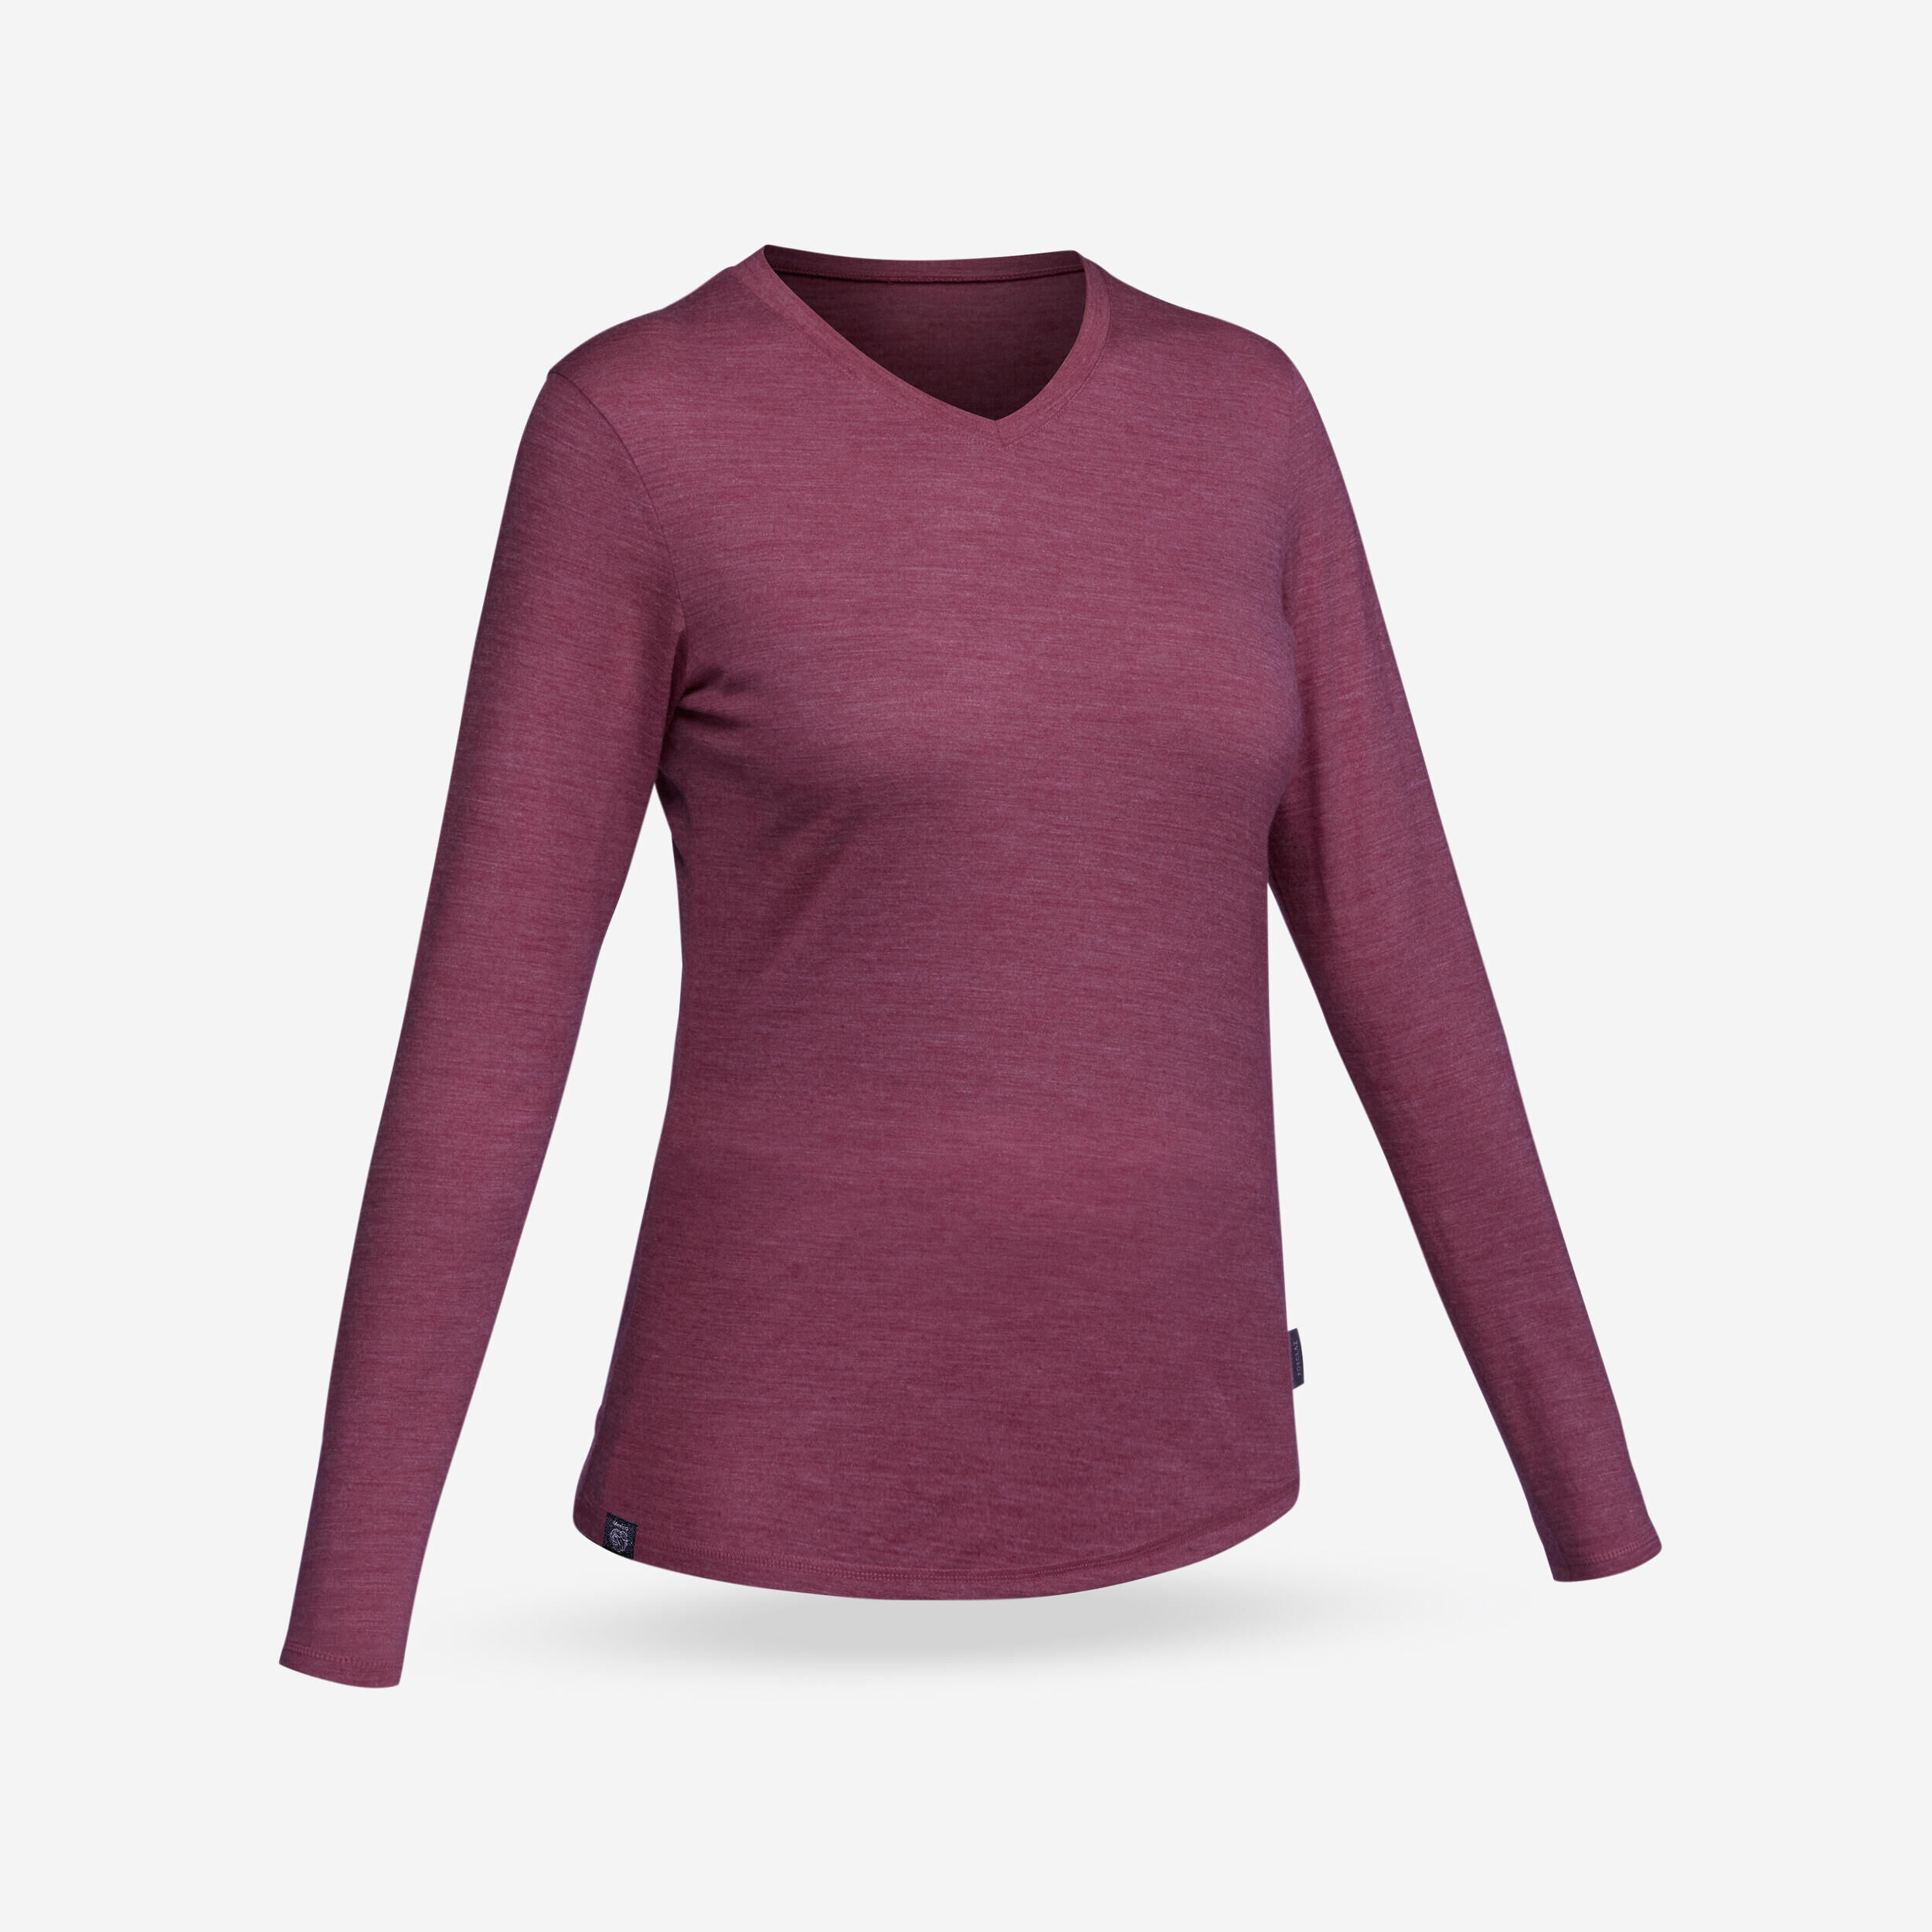 FORCLAZ Women's Trekking & Travel Merino Wool T-Shirt - TRAVEL 500